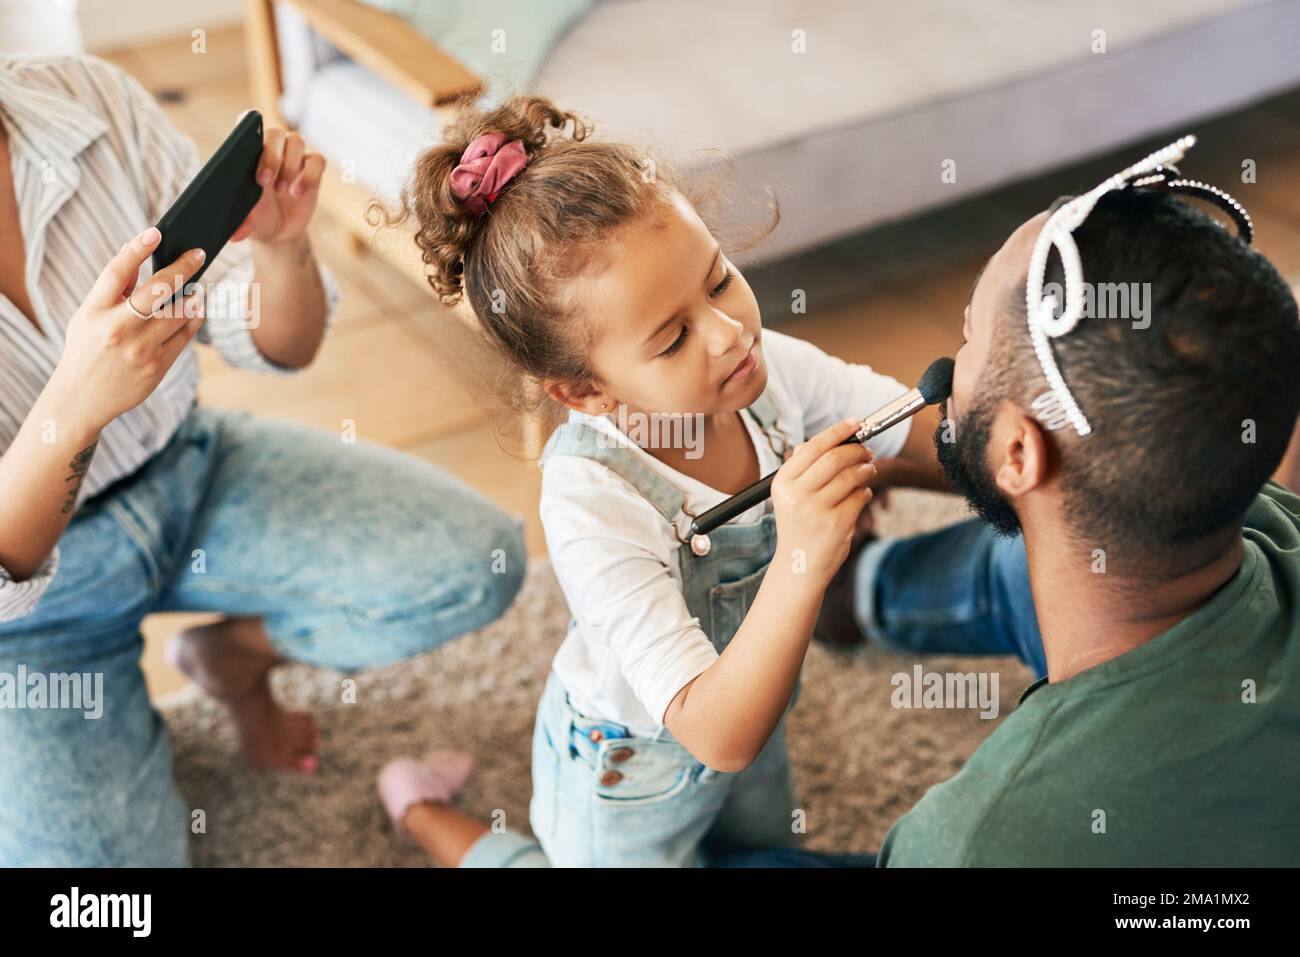 Ein kleiner Beauty-Guru in der Herstellung. Ein kleines Mädchen schminkt ihren Vater, während ihre Mutter zu Hause Fotos von ihnen macht. Stockfoto